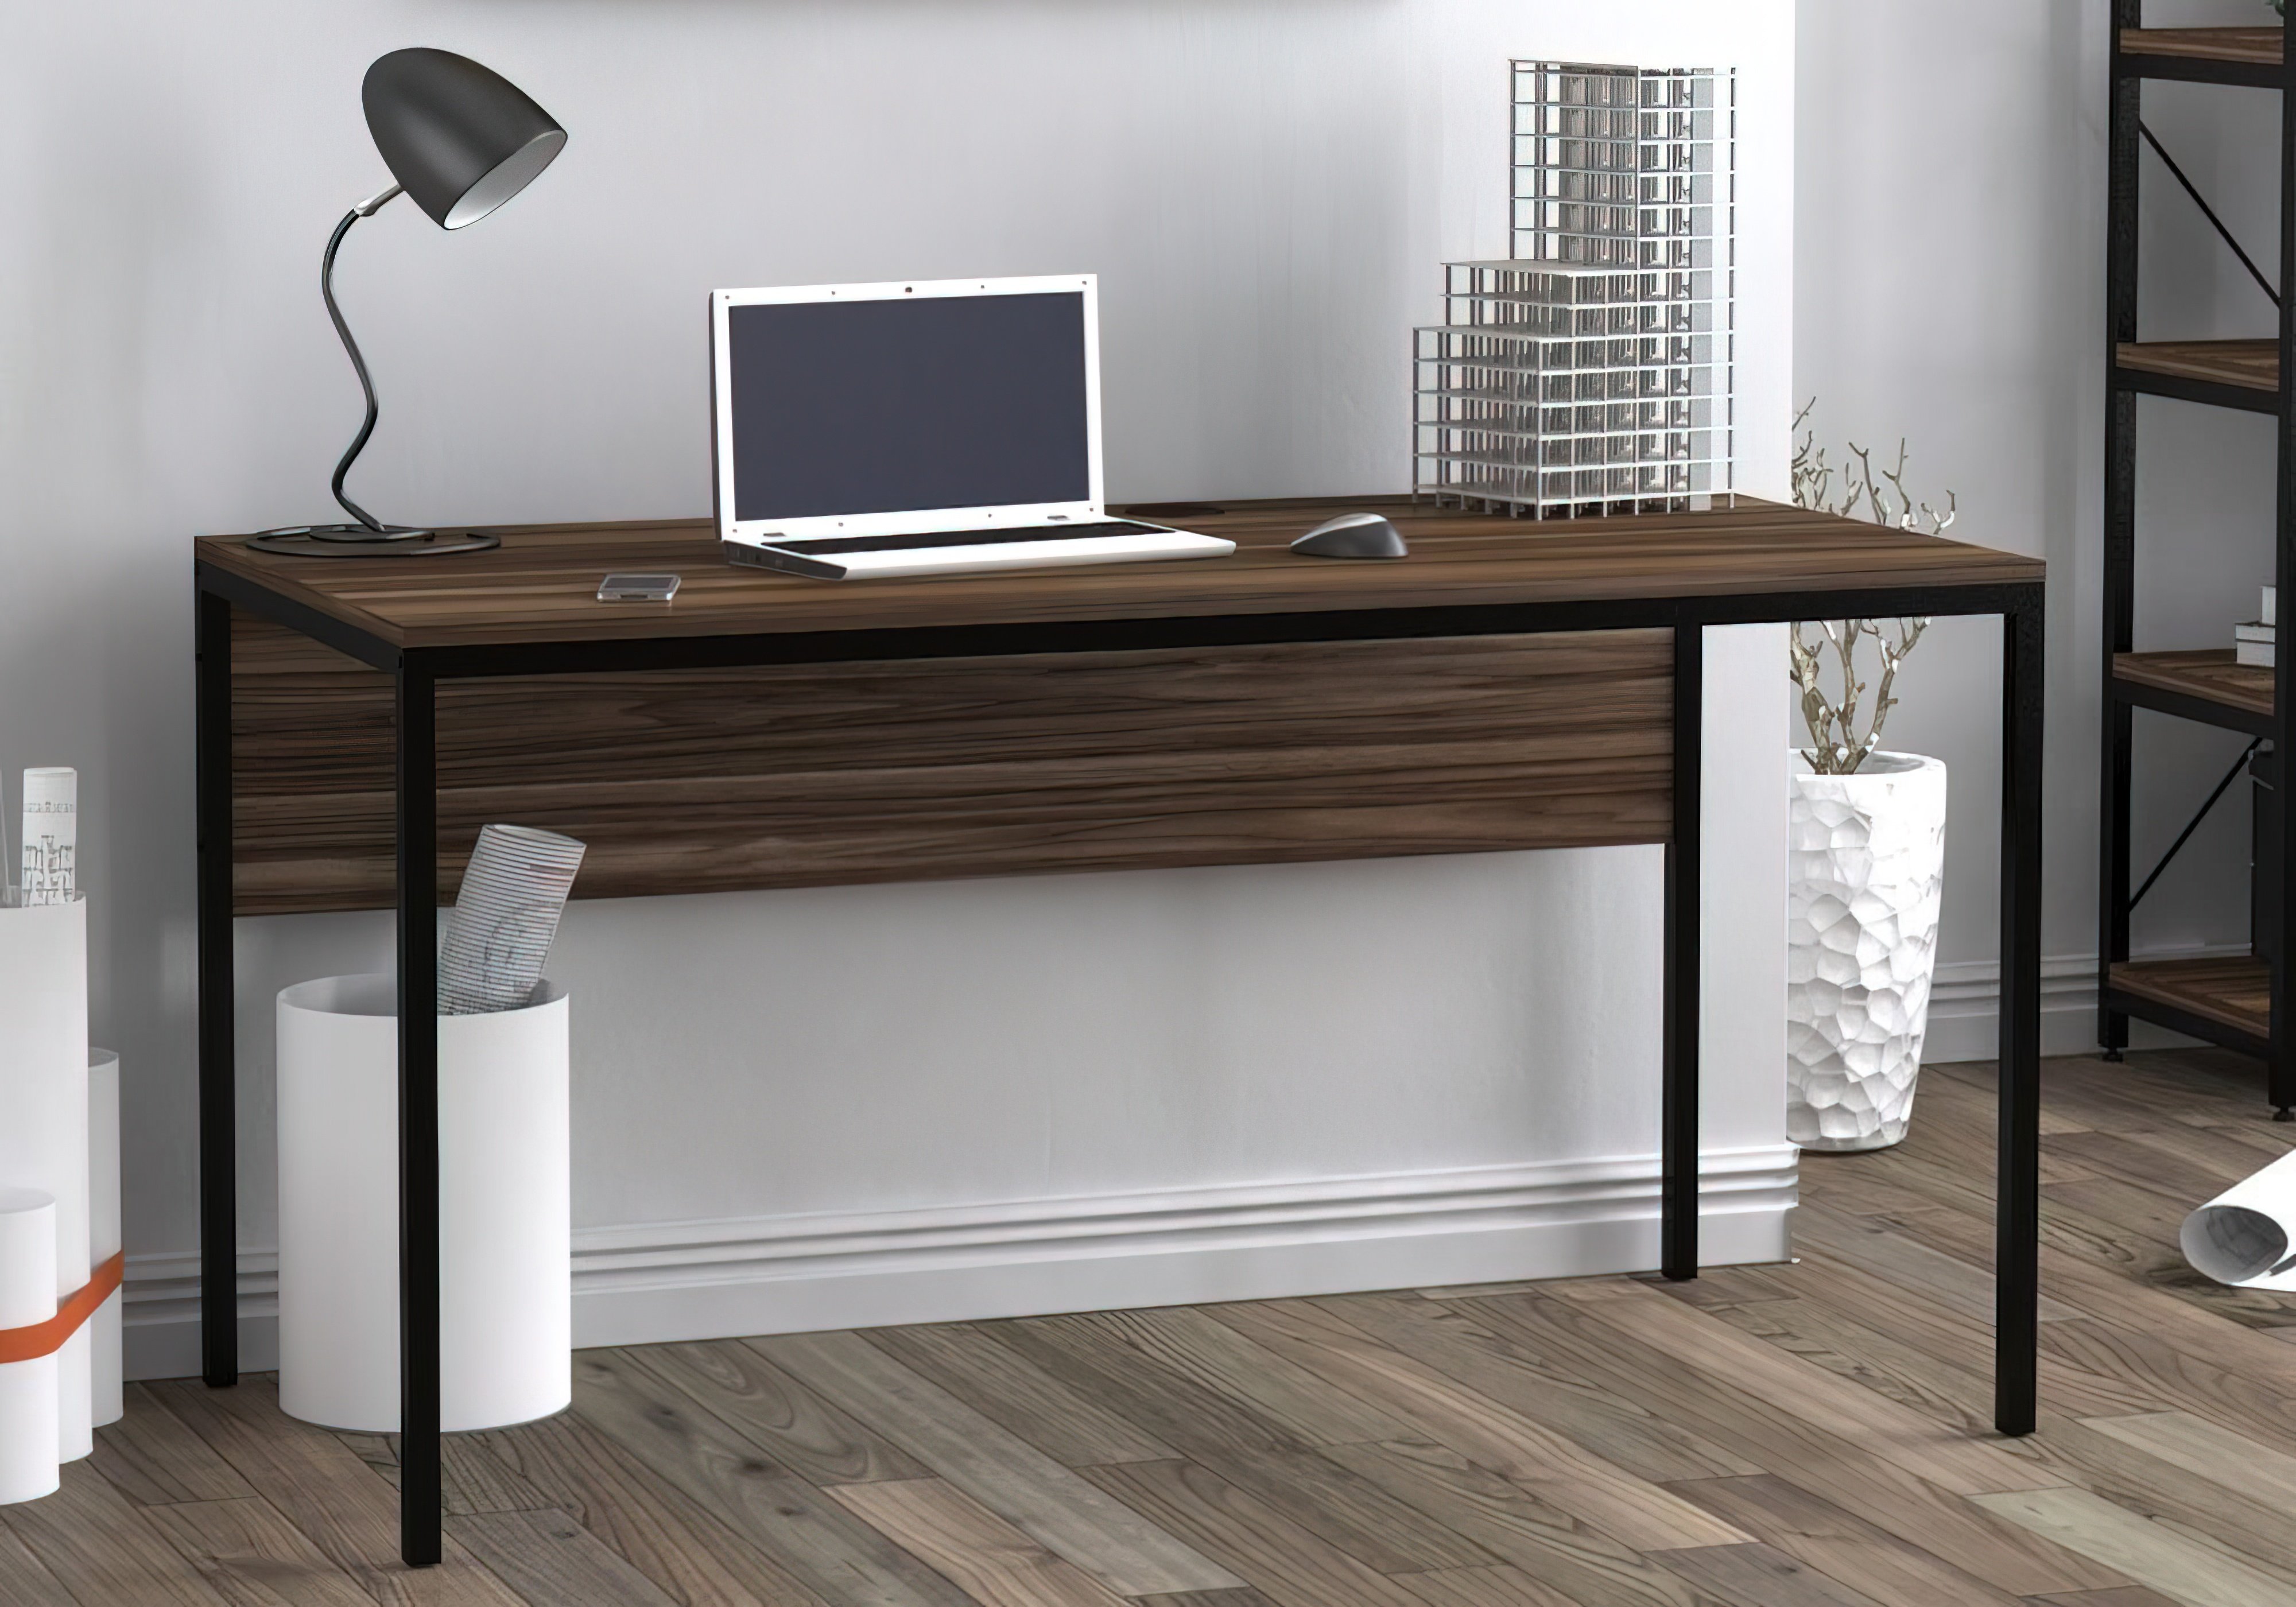  Купить Офисные столы Стол офисный "L-3p" Loft Design